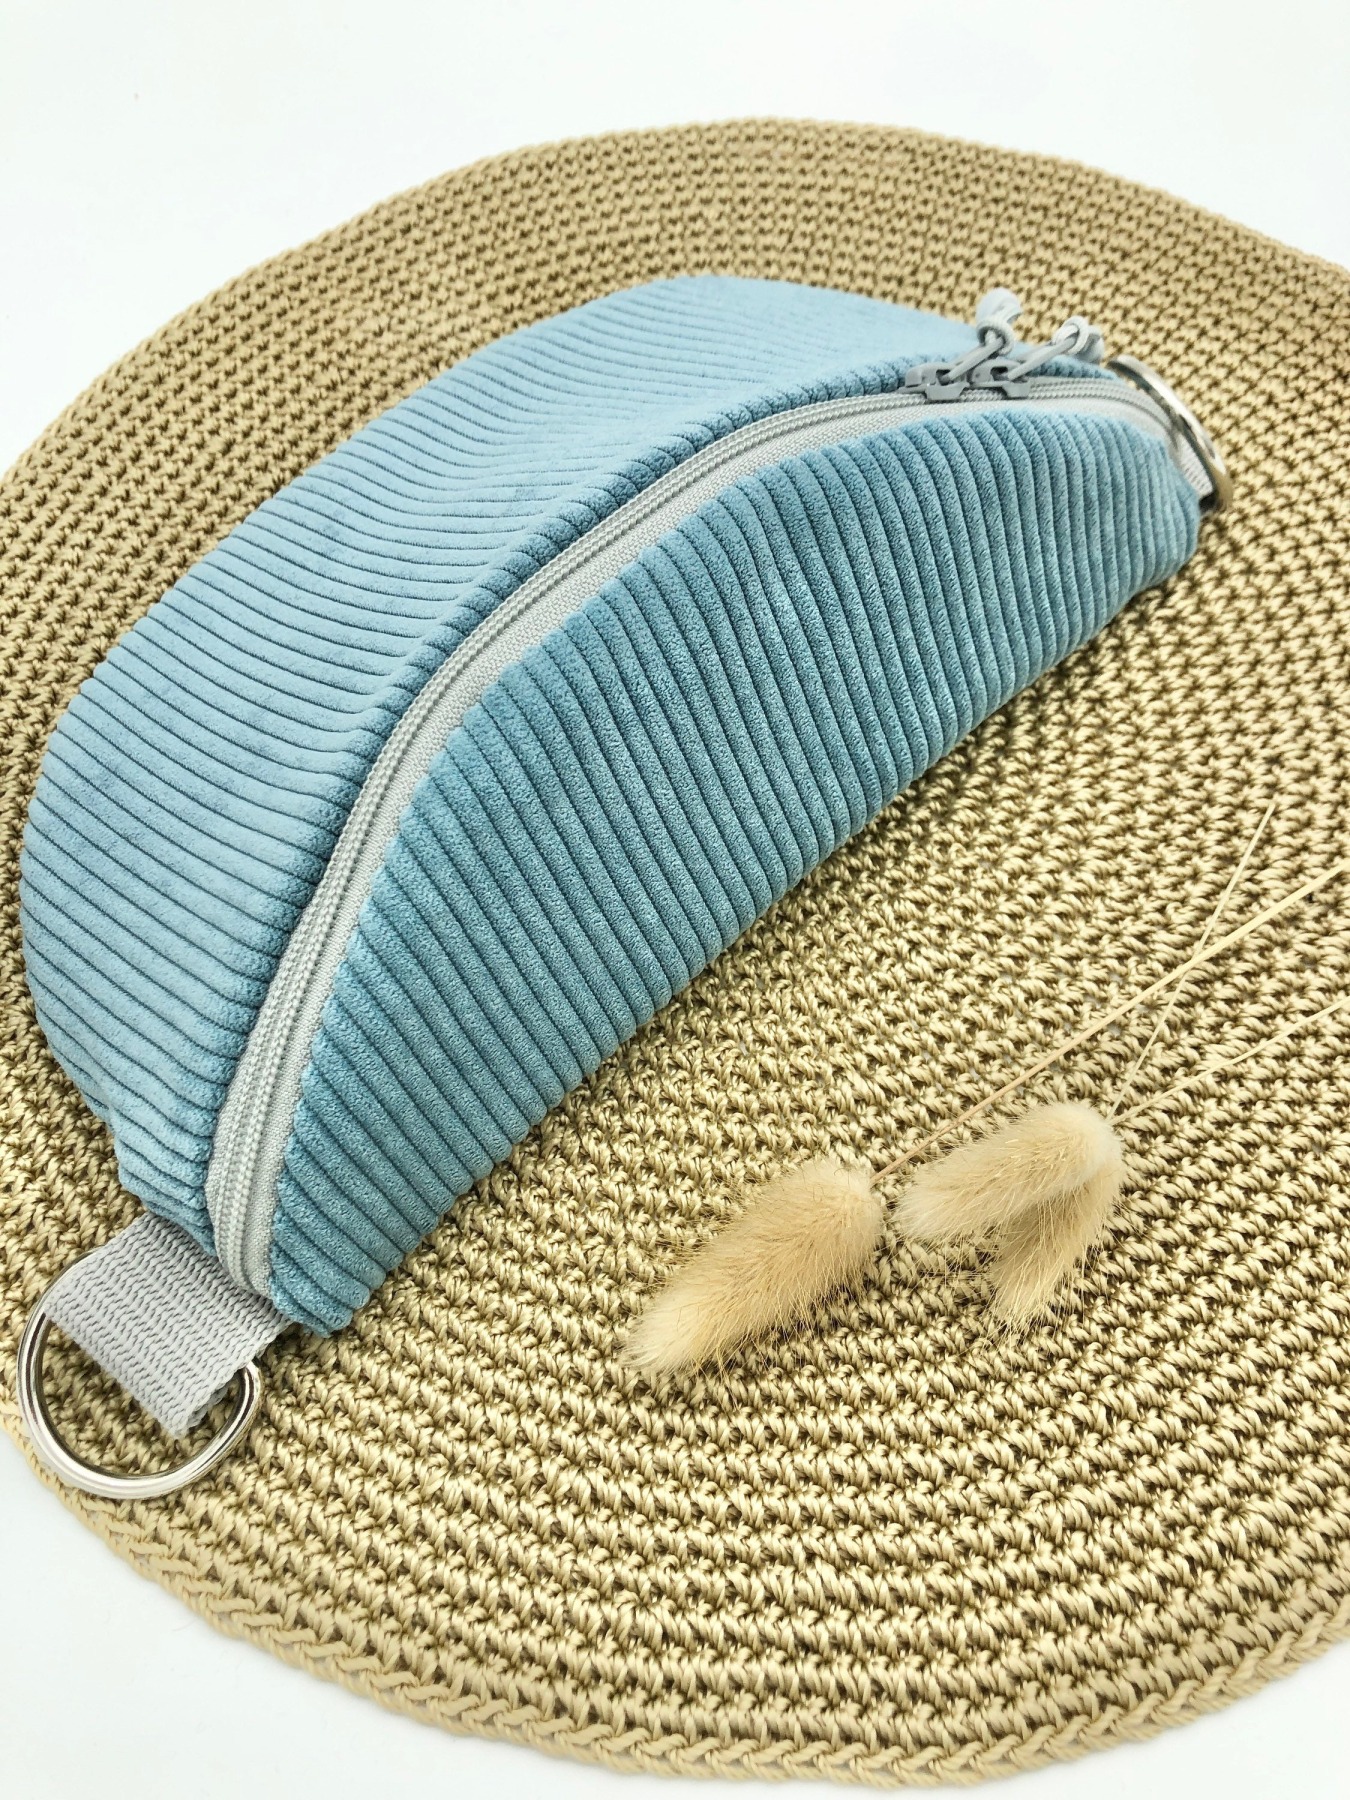 Crossbag Cord hellblau mit gestreiftem Taschengurt blau Tasche Cord blau Bauchtasche Hipbag leicht